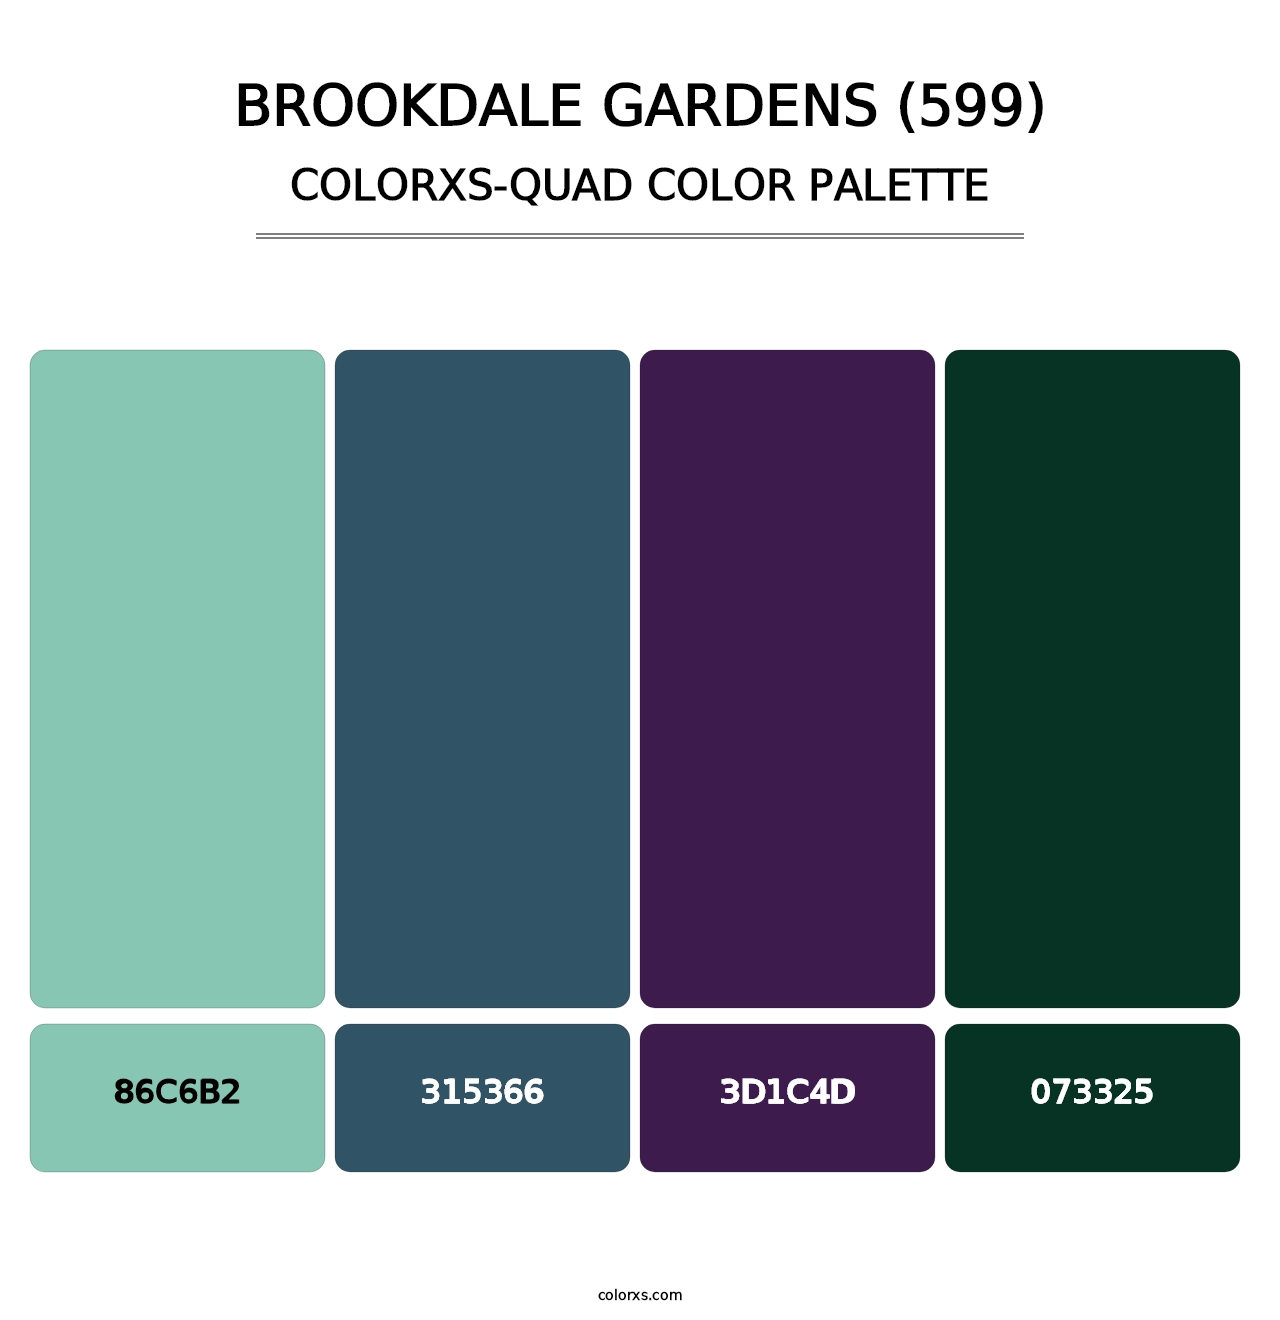 Brookdale Gardens (599) - Colorxs Quad Palette